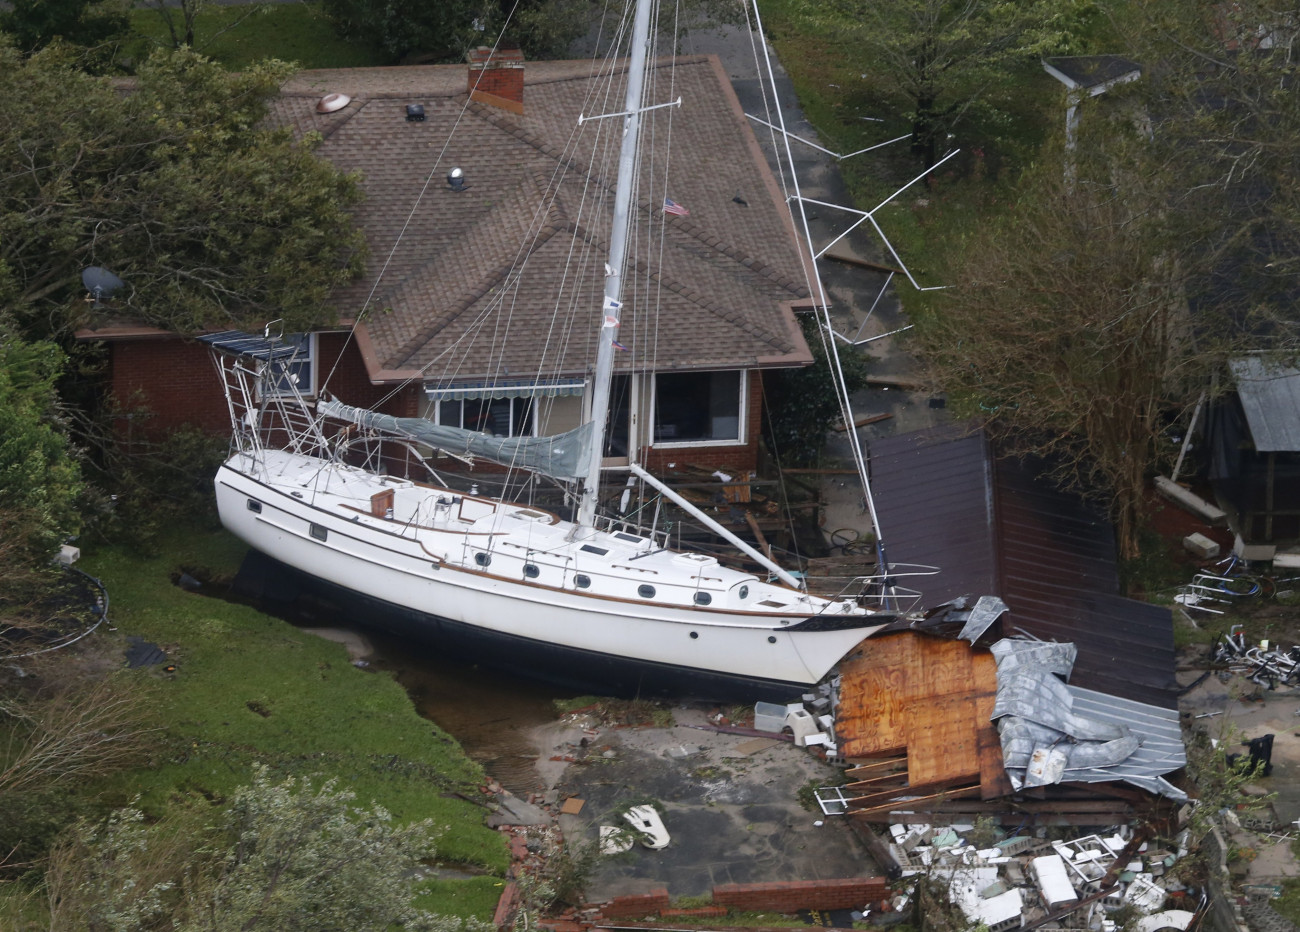 Légi felvétel egy ház kertjében lévő hajóról a Florence hurrikán elvonulása után az észak-karolinai New Bern kikötőjében 2018. szeptember 15-én. Az Atlanti-óceán felől érkező hurrikán  trópusi viharrá szelídült, de változatlanul veszélyes, több halálos áldozatot követelt. (MTI/AP/Steve Helber)